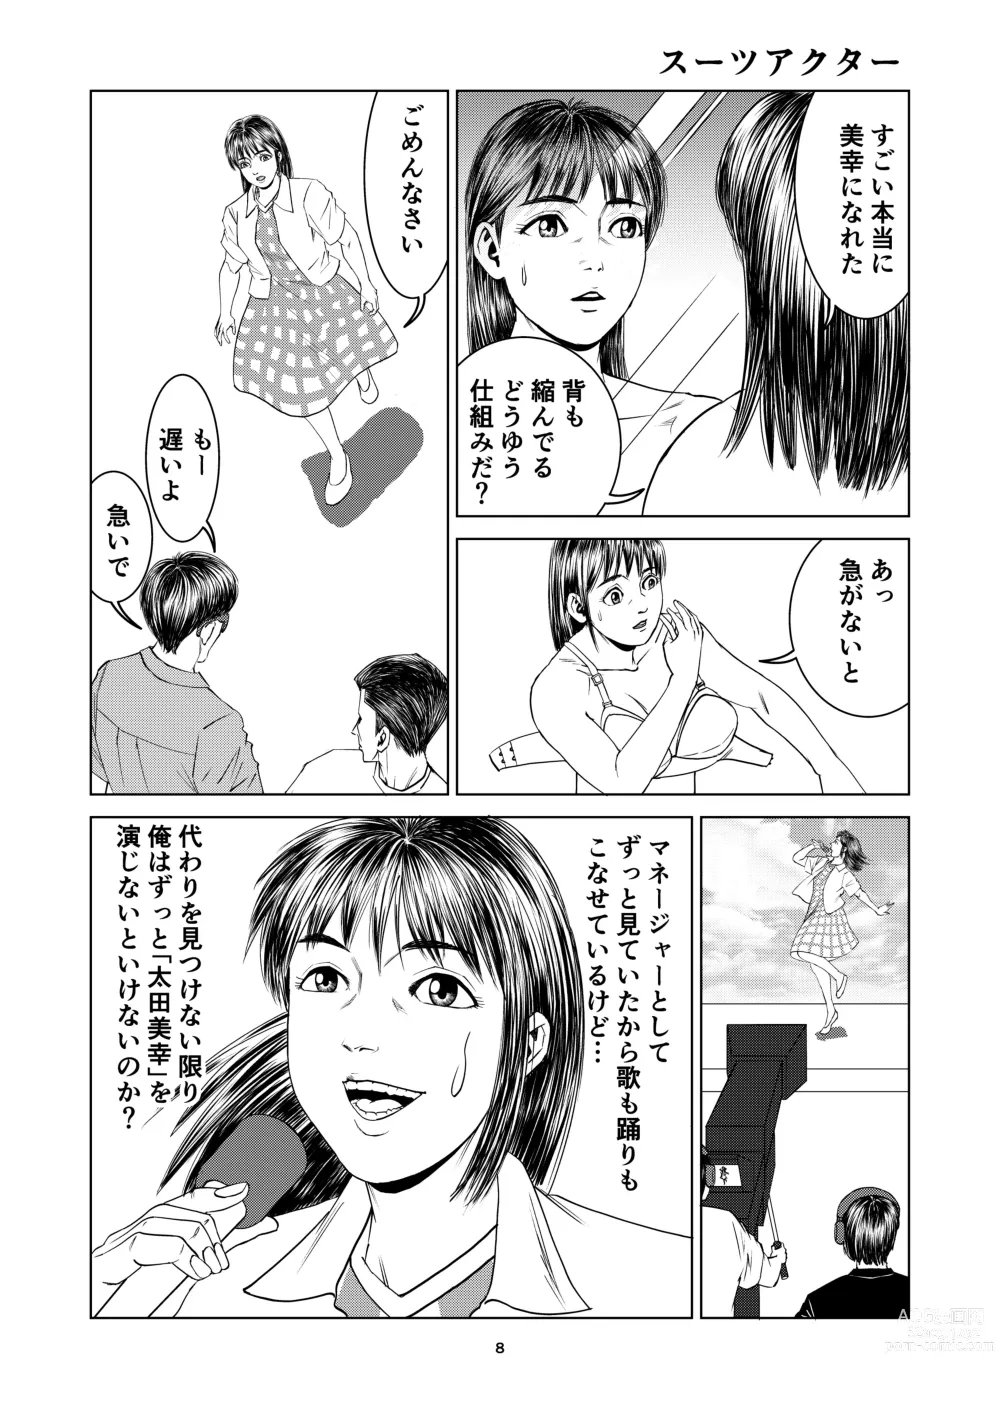 Page 8 of doujinshi Yutakadou short story collection 2